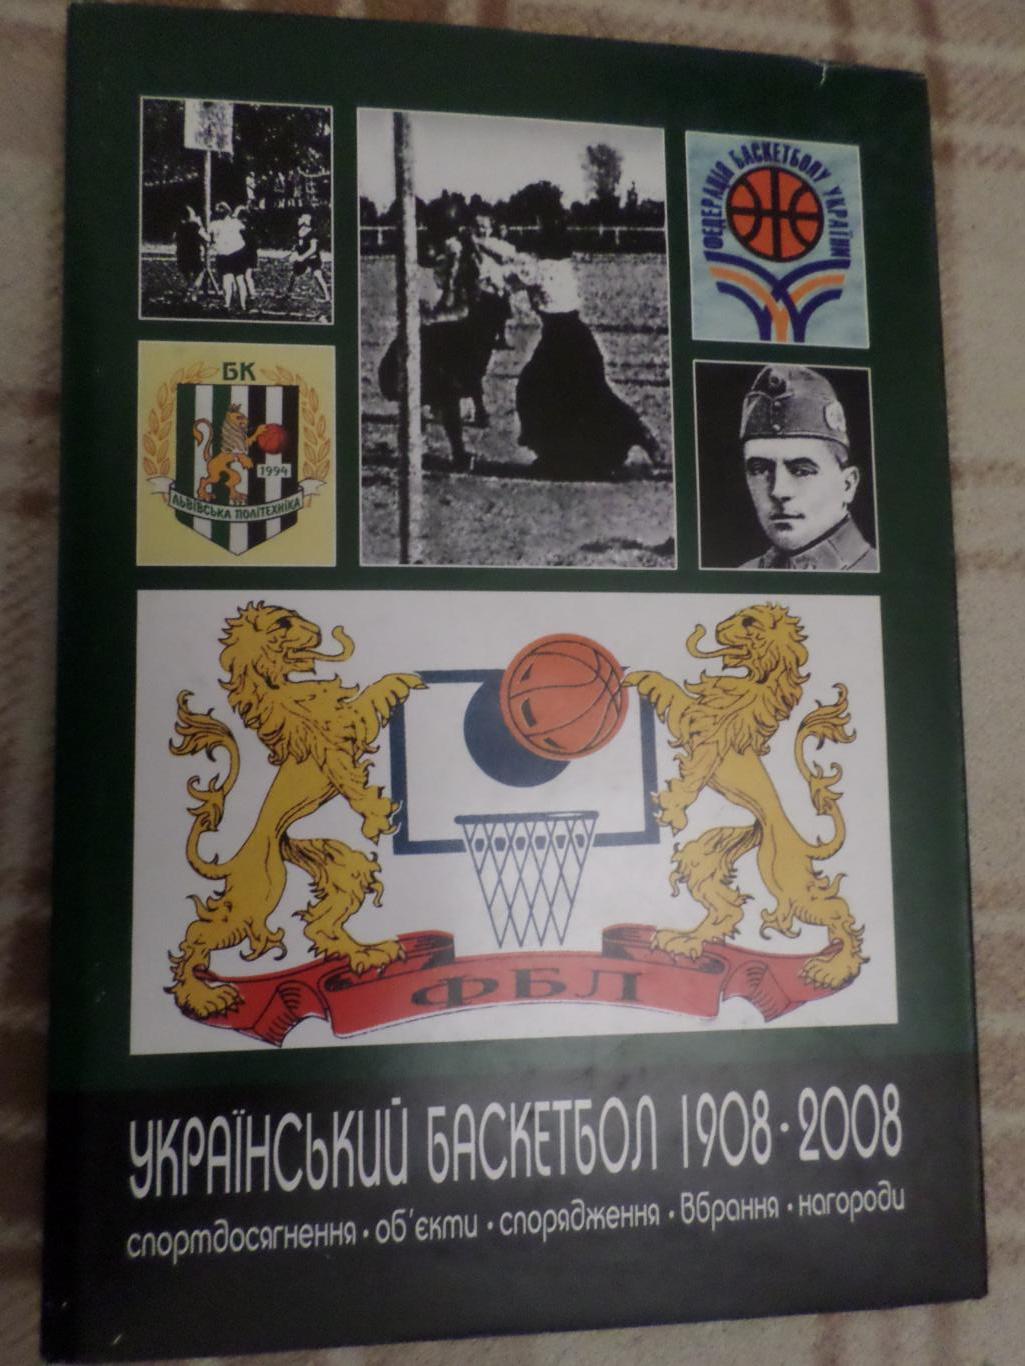 Нога - Украинский баскетбол 1908-2008 гг